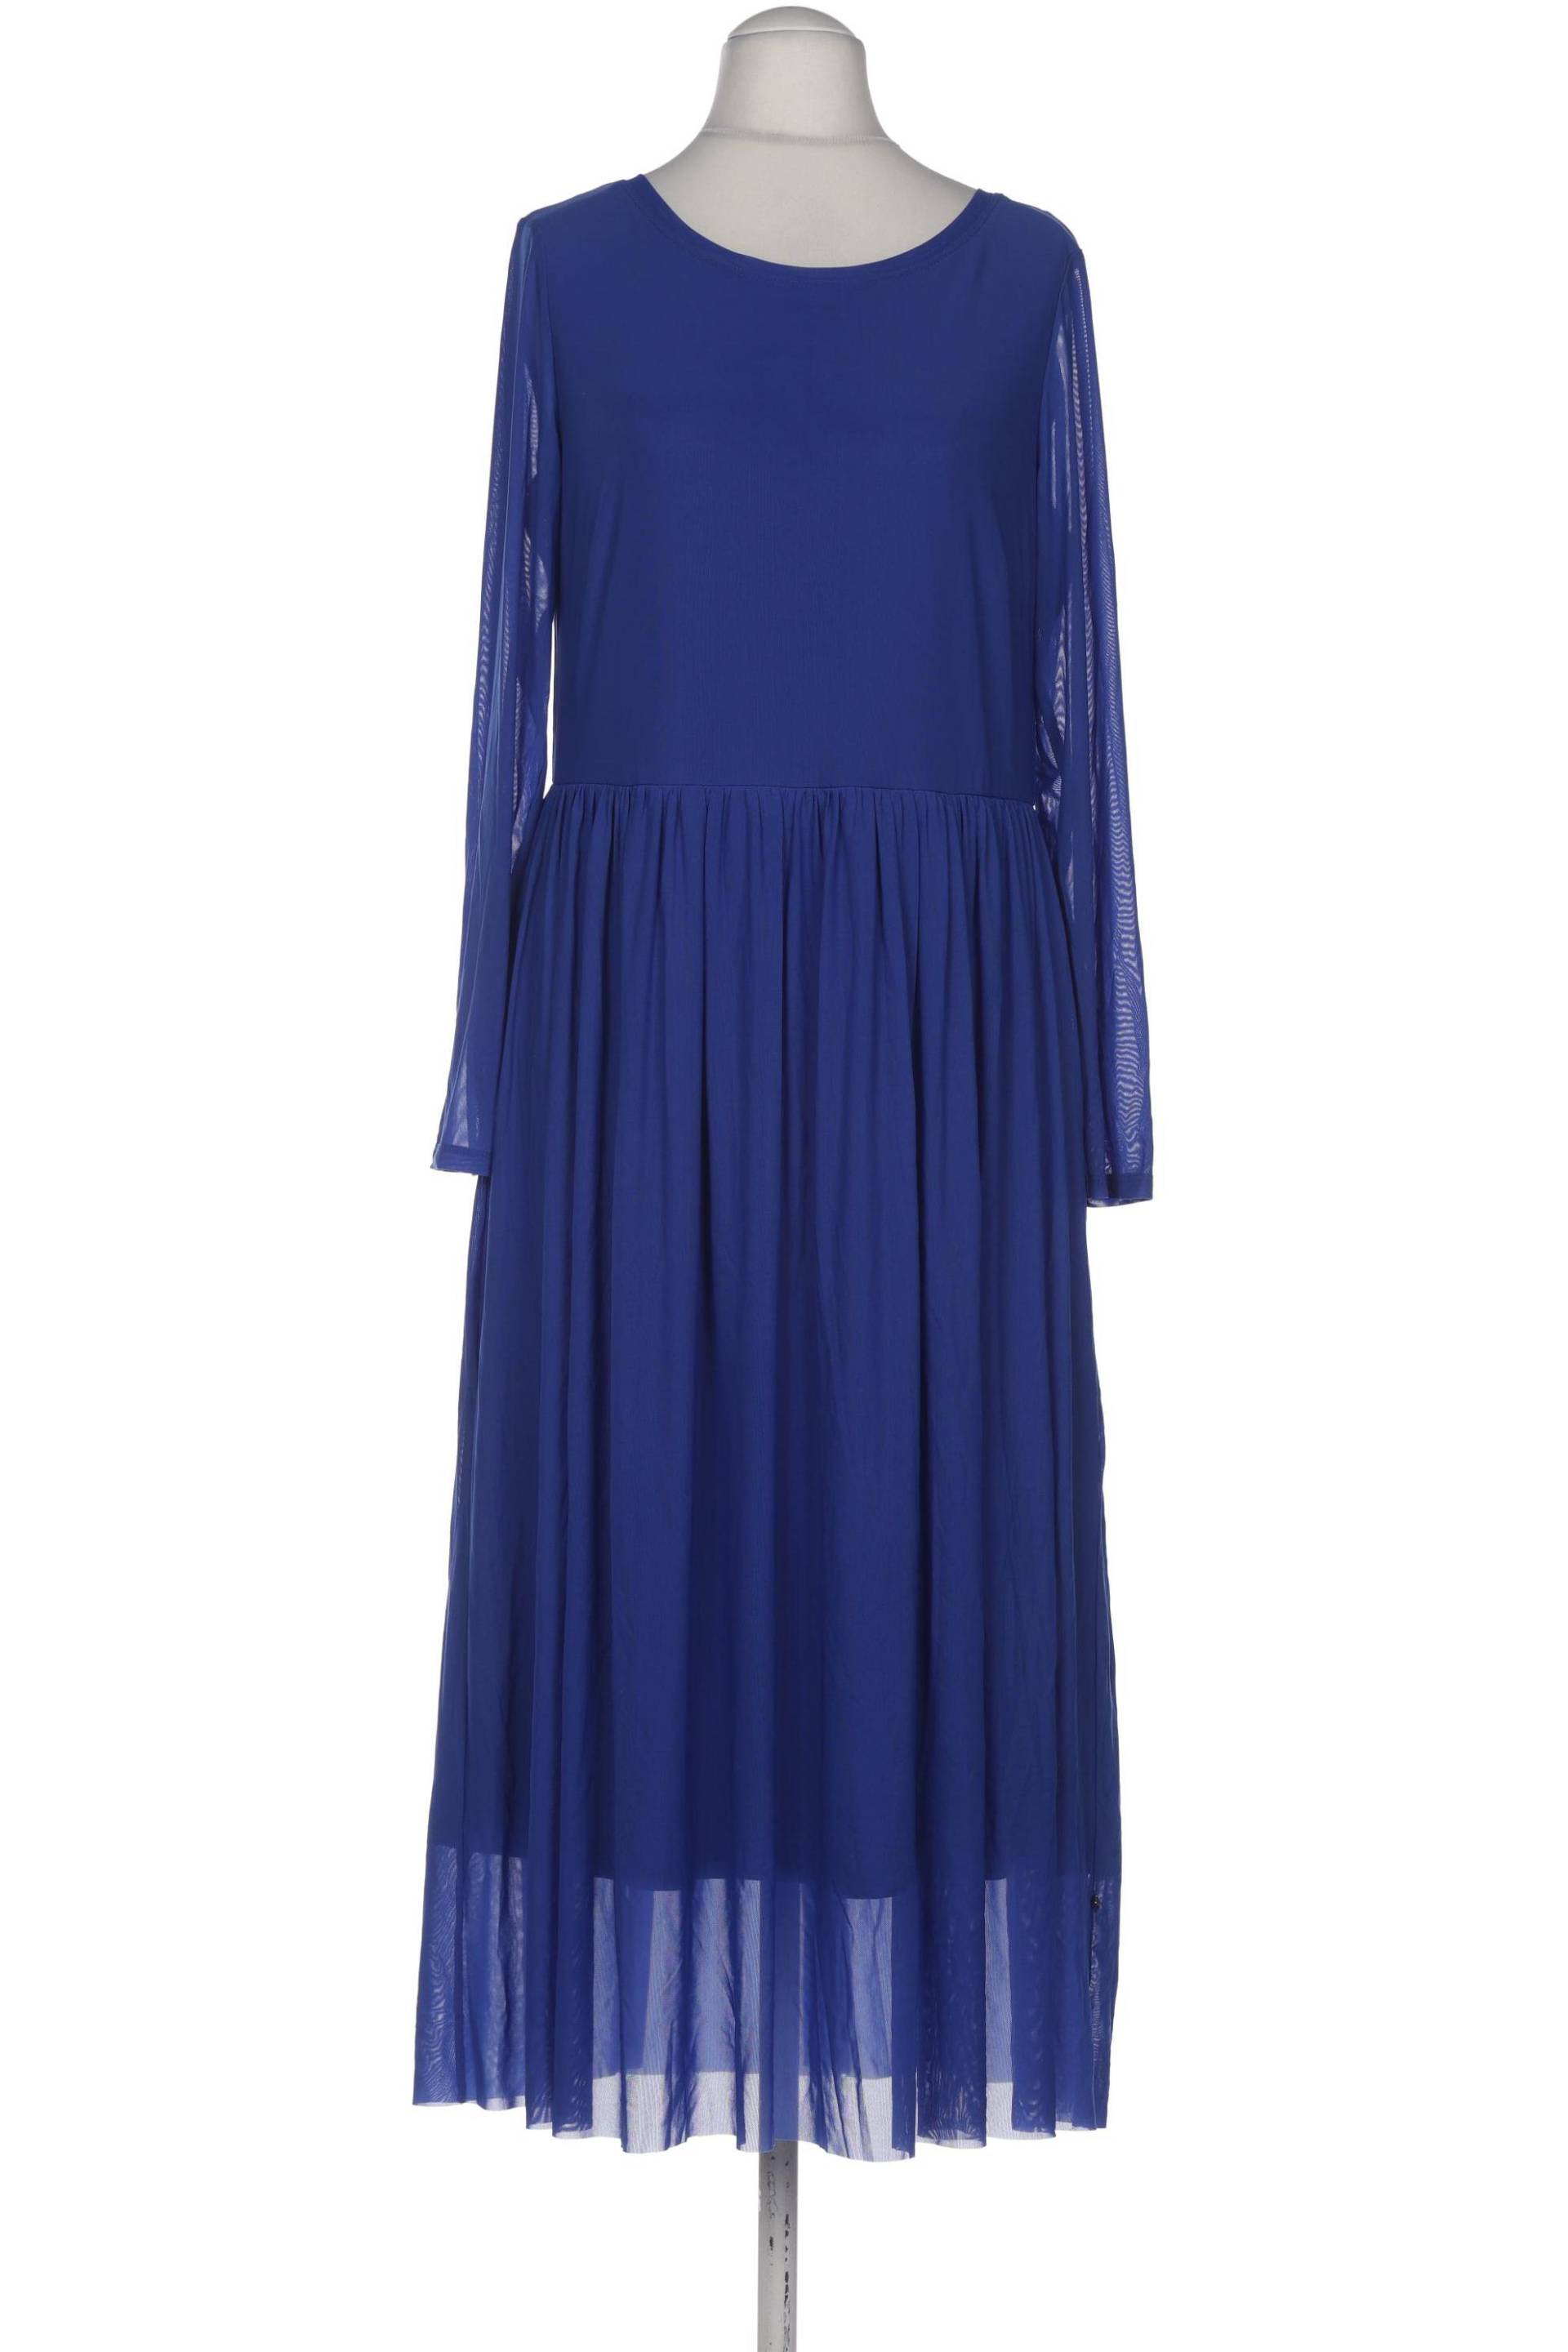 Robe Legere Damen Kleid, blau, Gr. 38 von Robe Legere